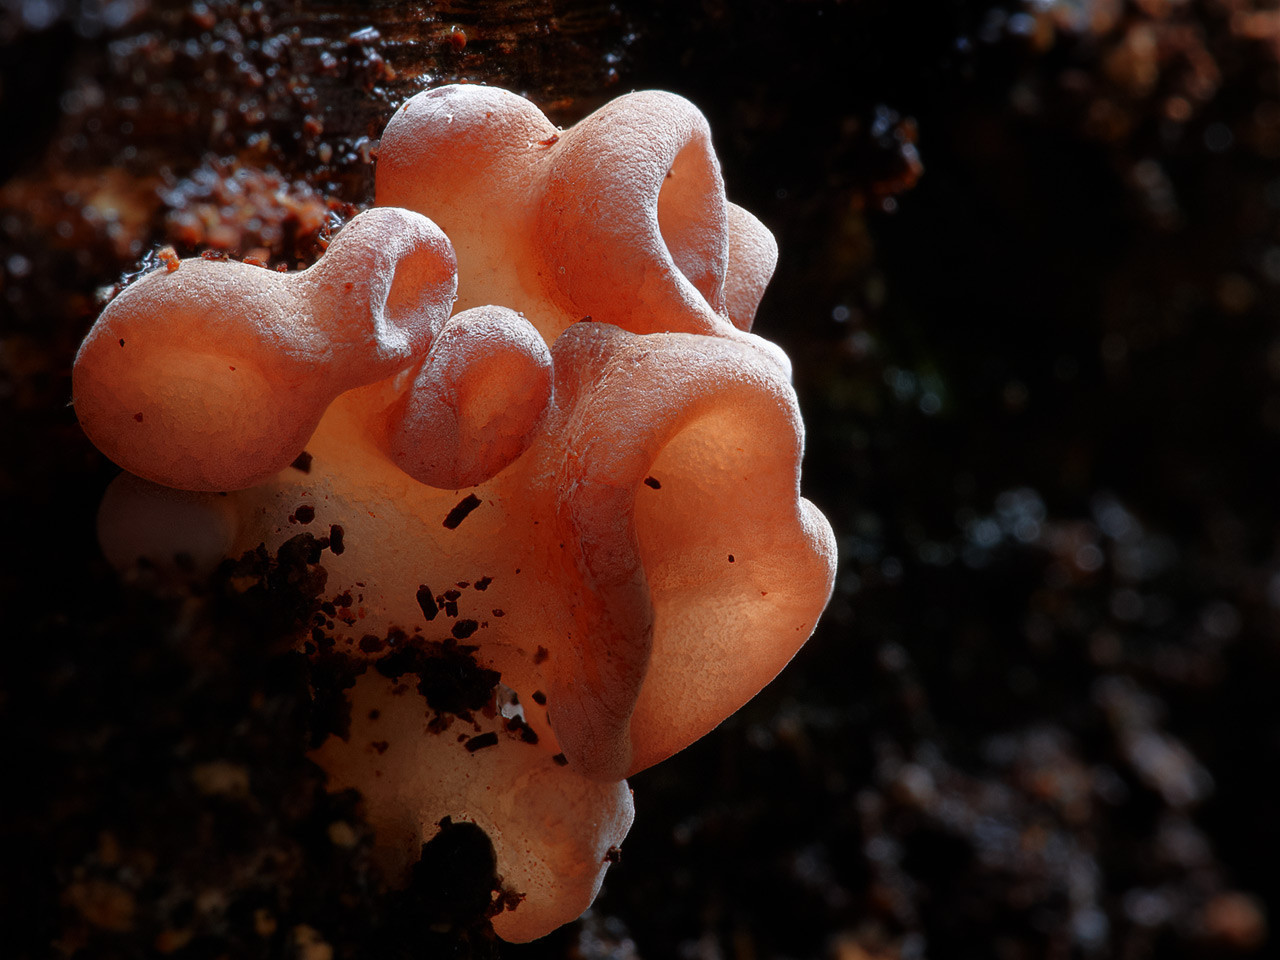 close up auricularia - pink mushrooms